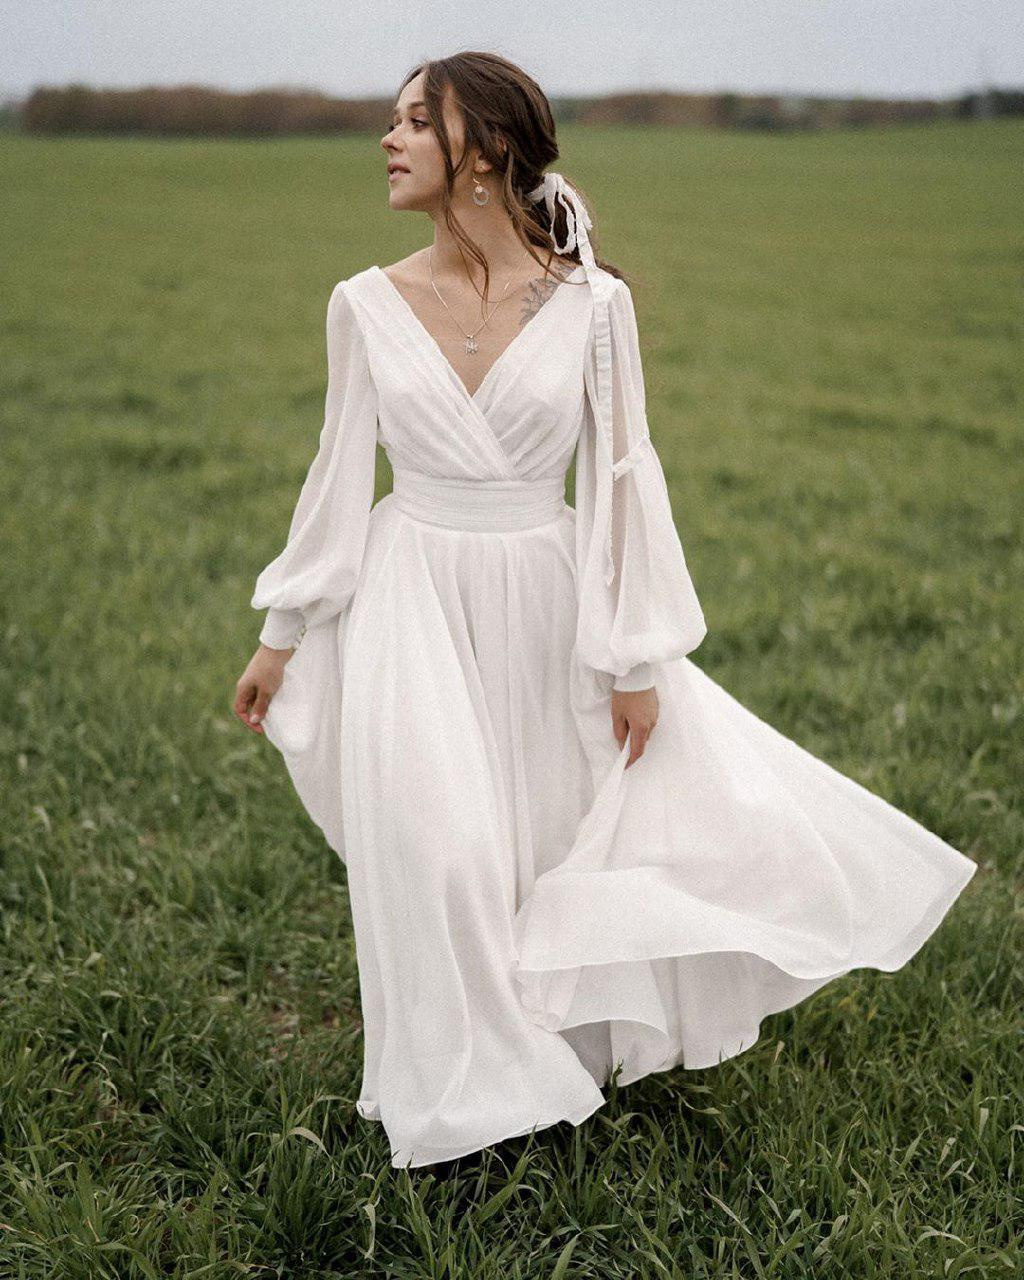 Купить свадебное платье «Паулина» Анже Этуаль из коллекции 2021 года в салоне «Мэри Трюфель»